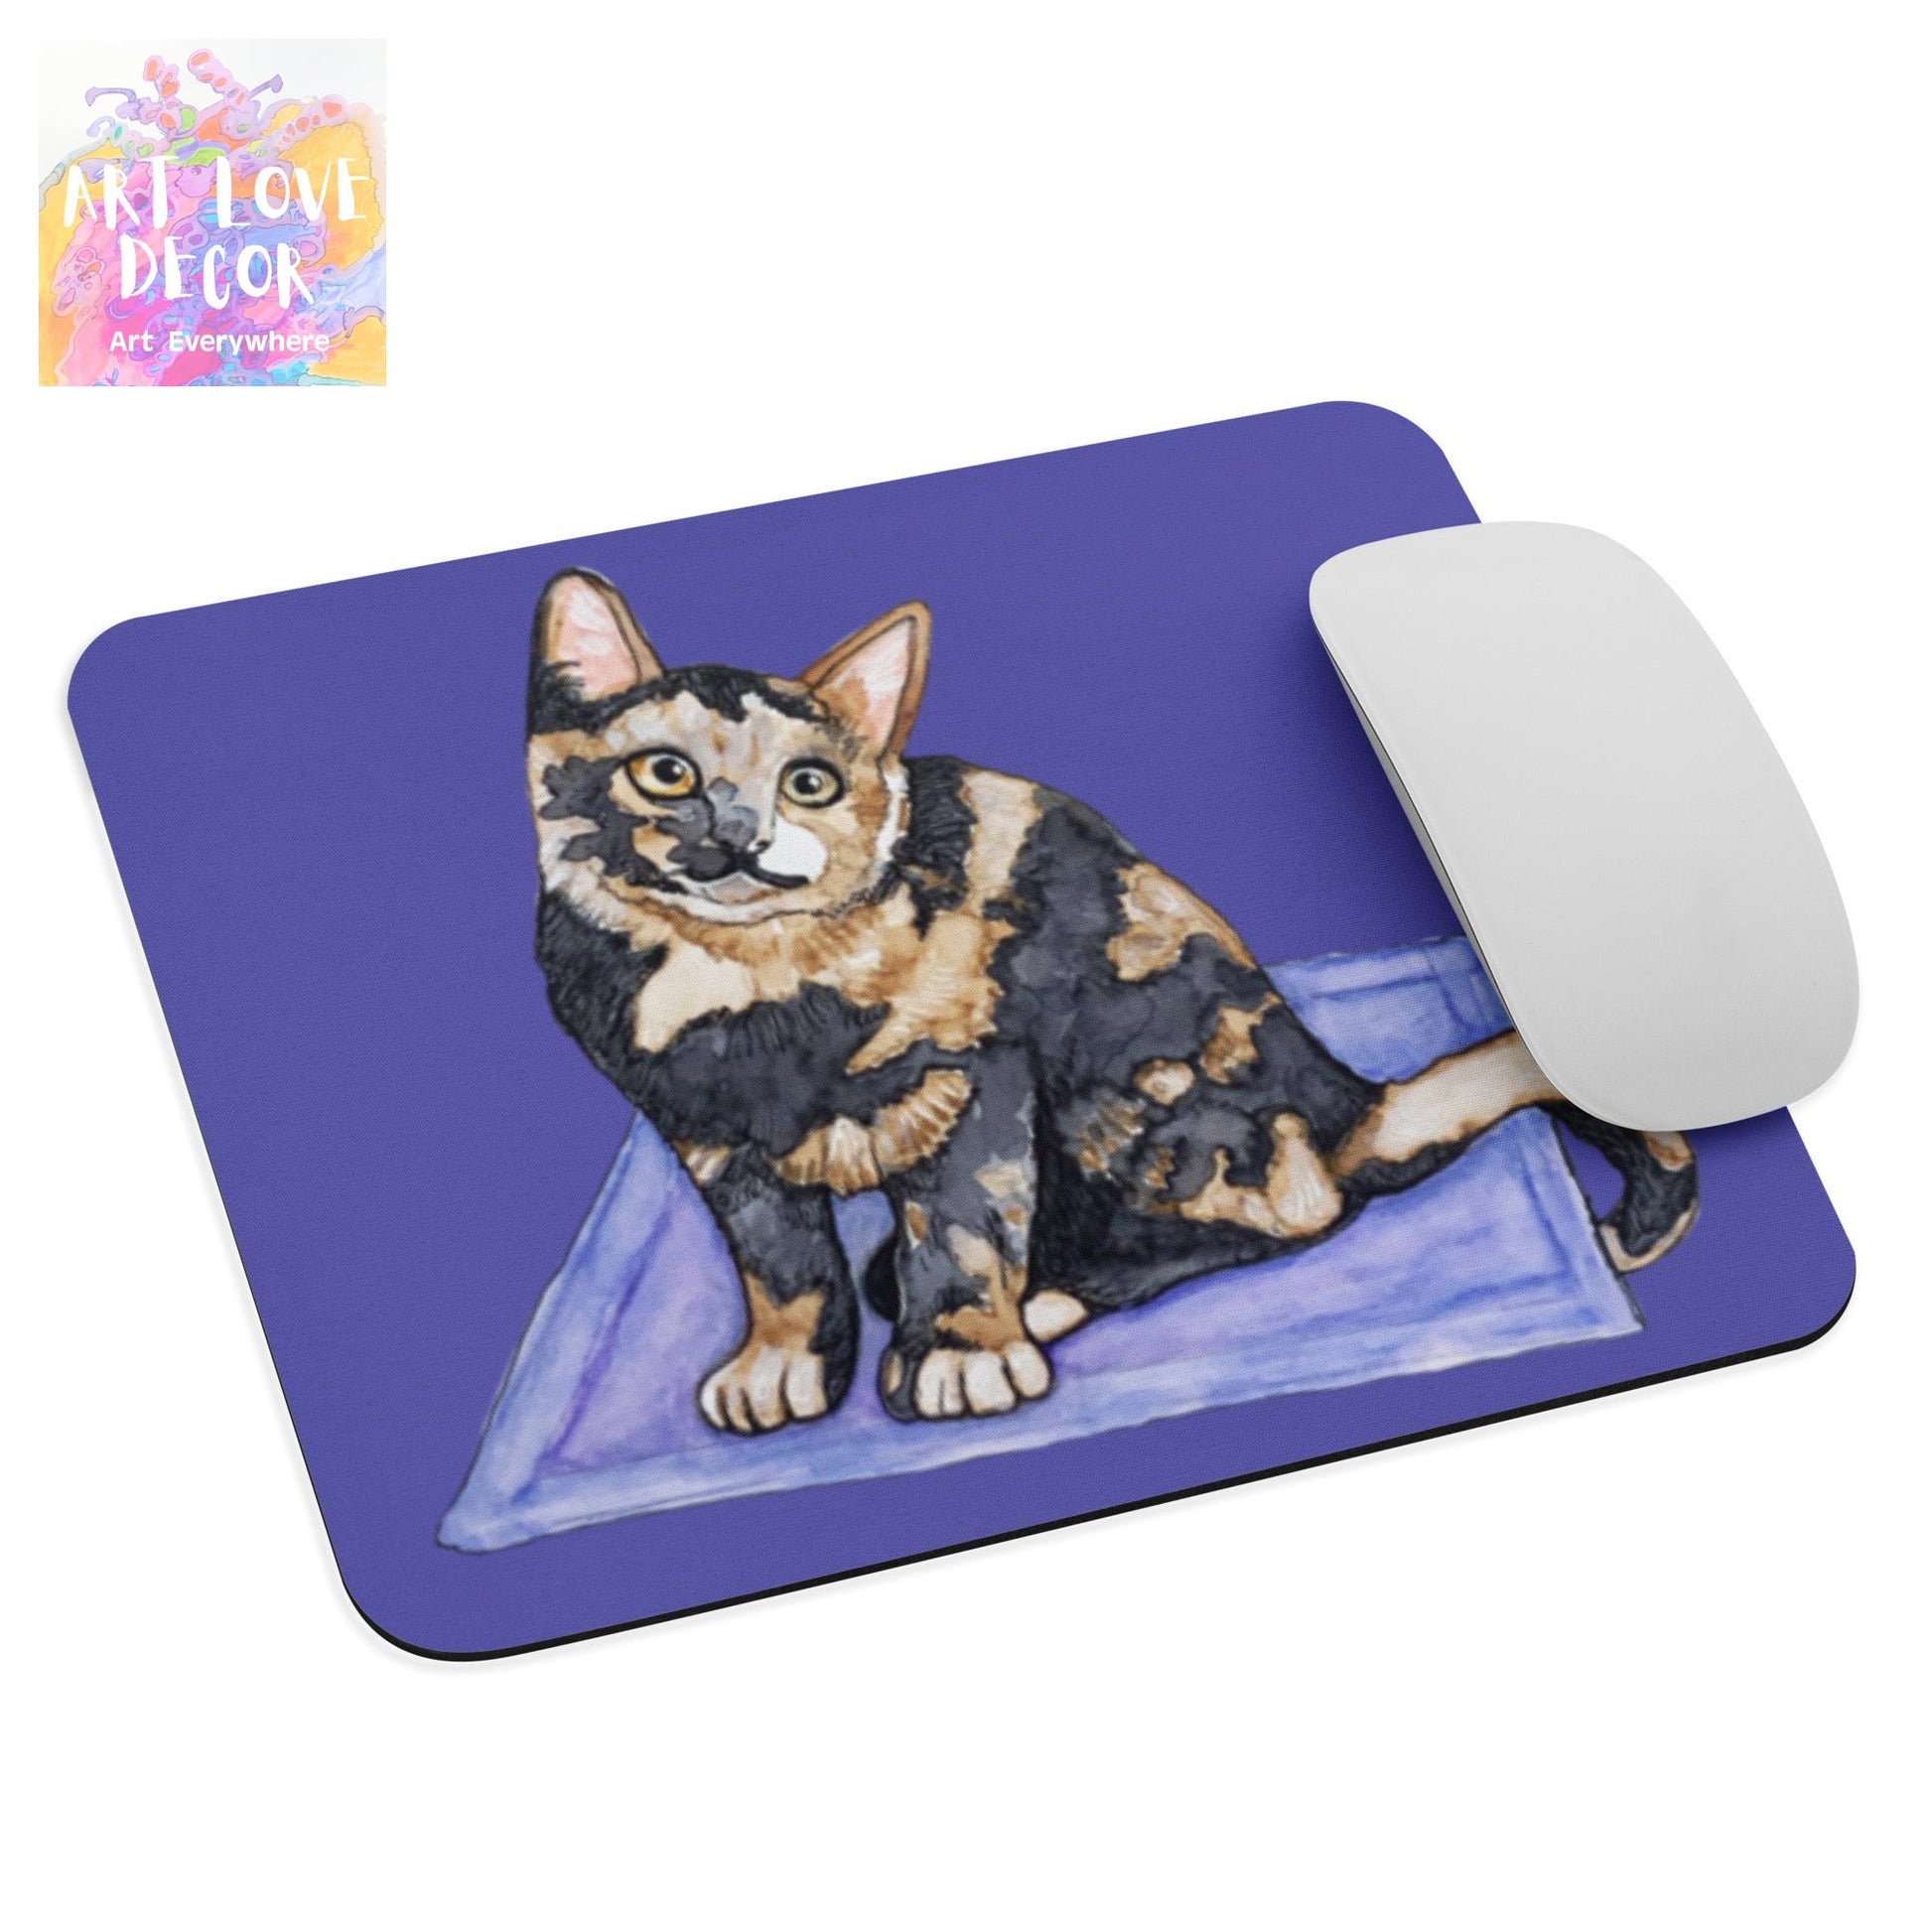 Tutu Kitten Mouse pad - Art Love Decor